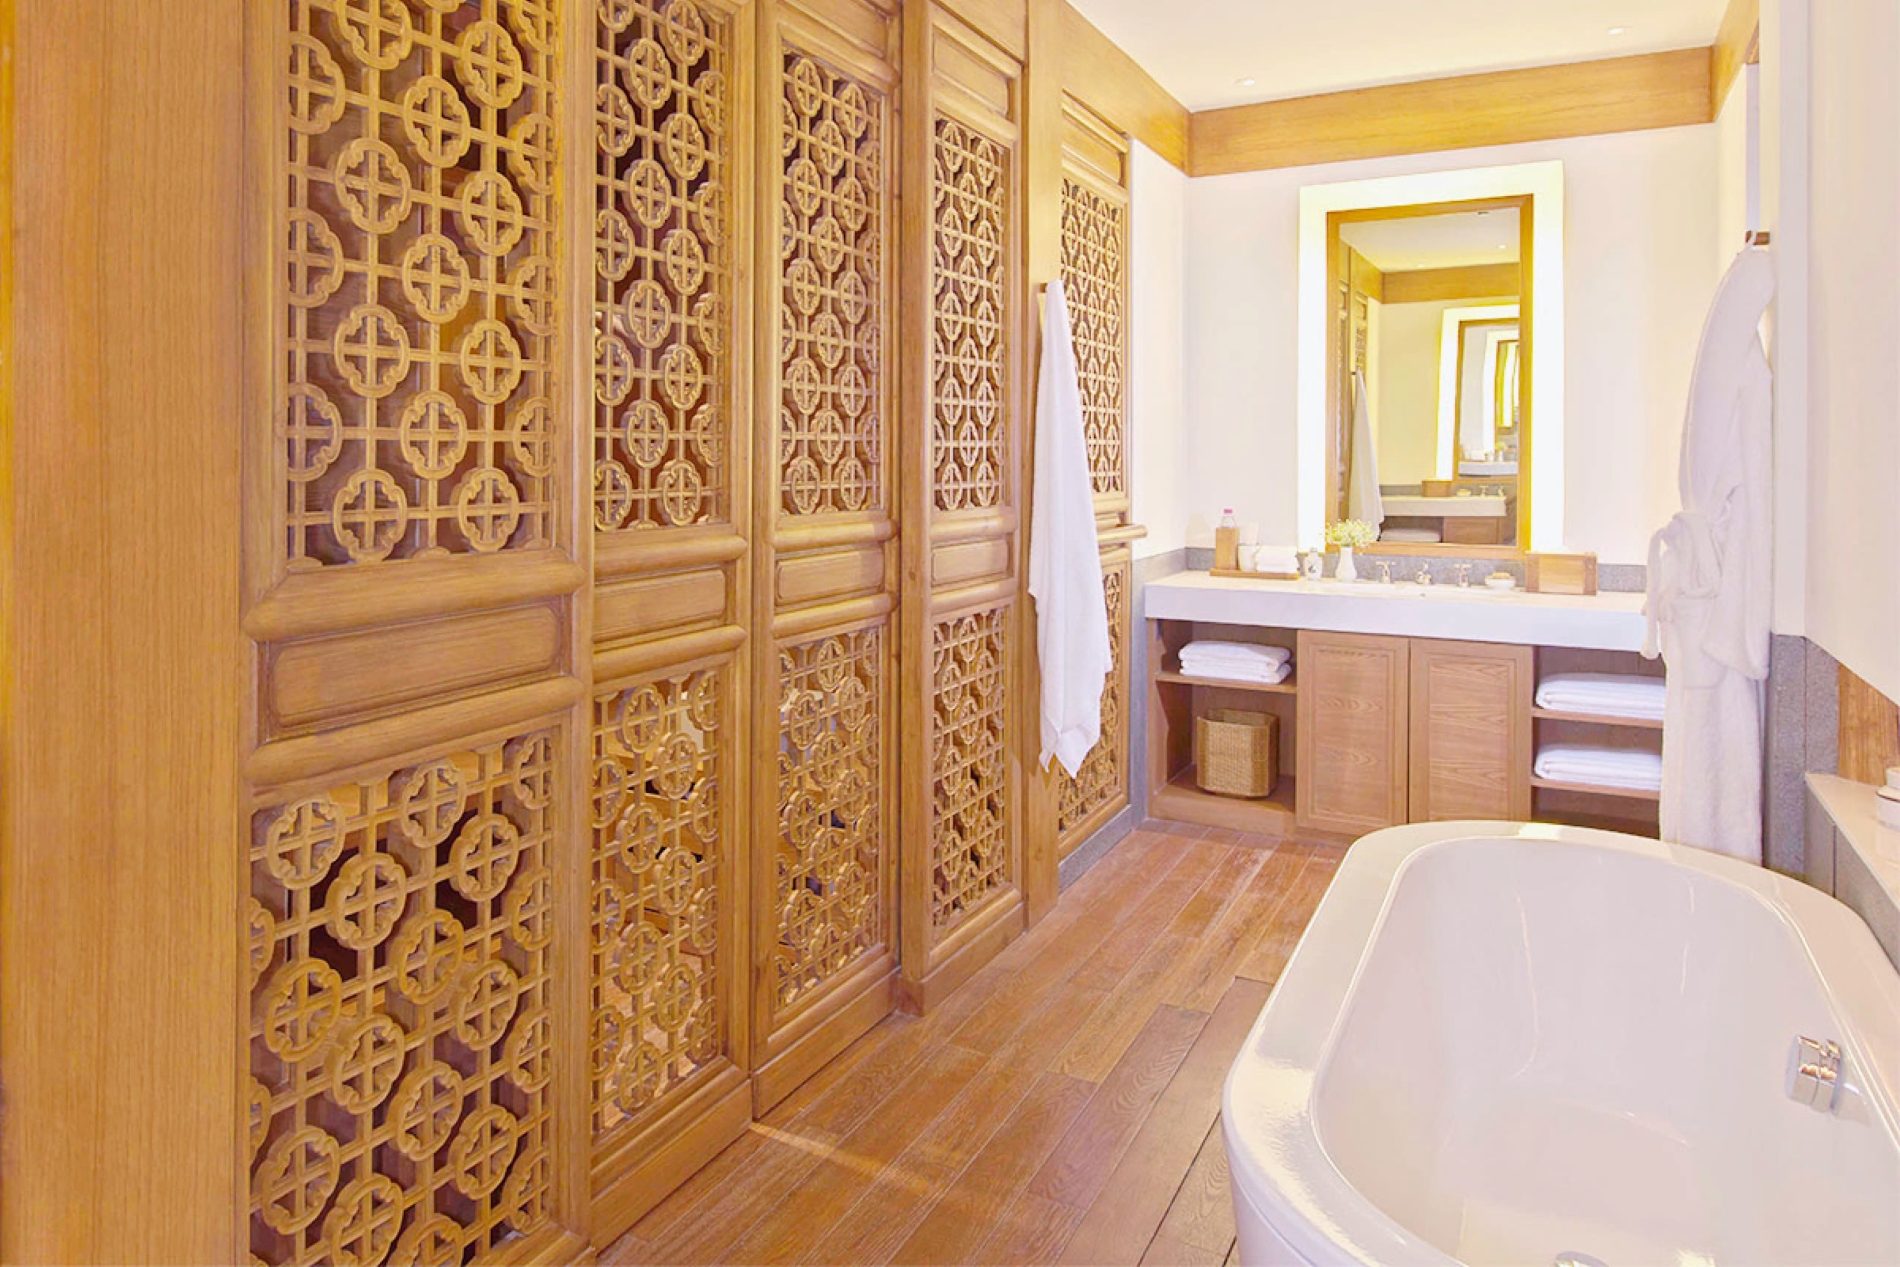 großes und helles bad im amandayan luxushotels mit großer freistehender wanne und holzvertäfeltem schrank vor dem hellen spiegel und großem waschbecken